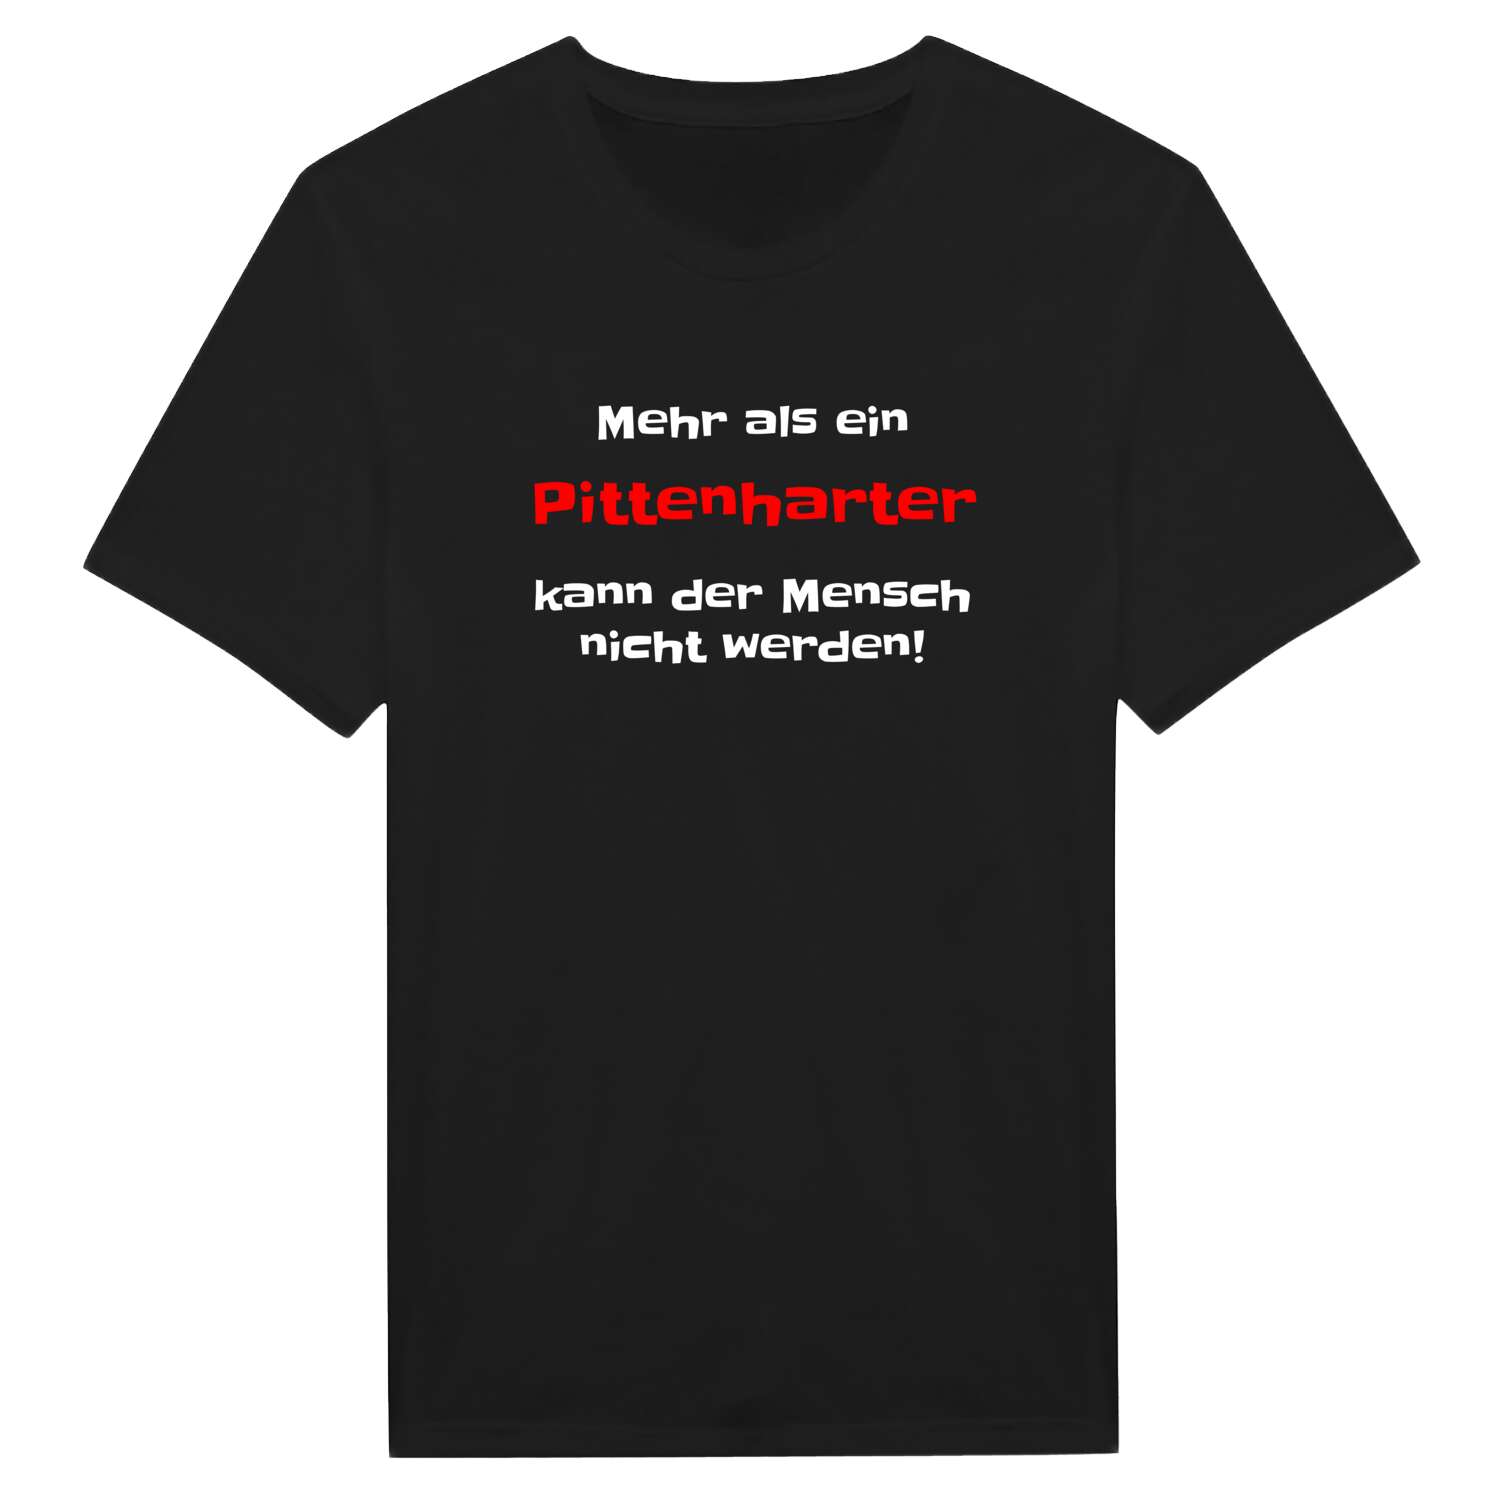 Pittenhart T-Shirt »Mehr als ein«